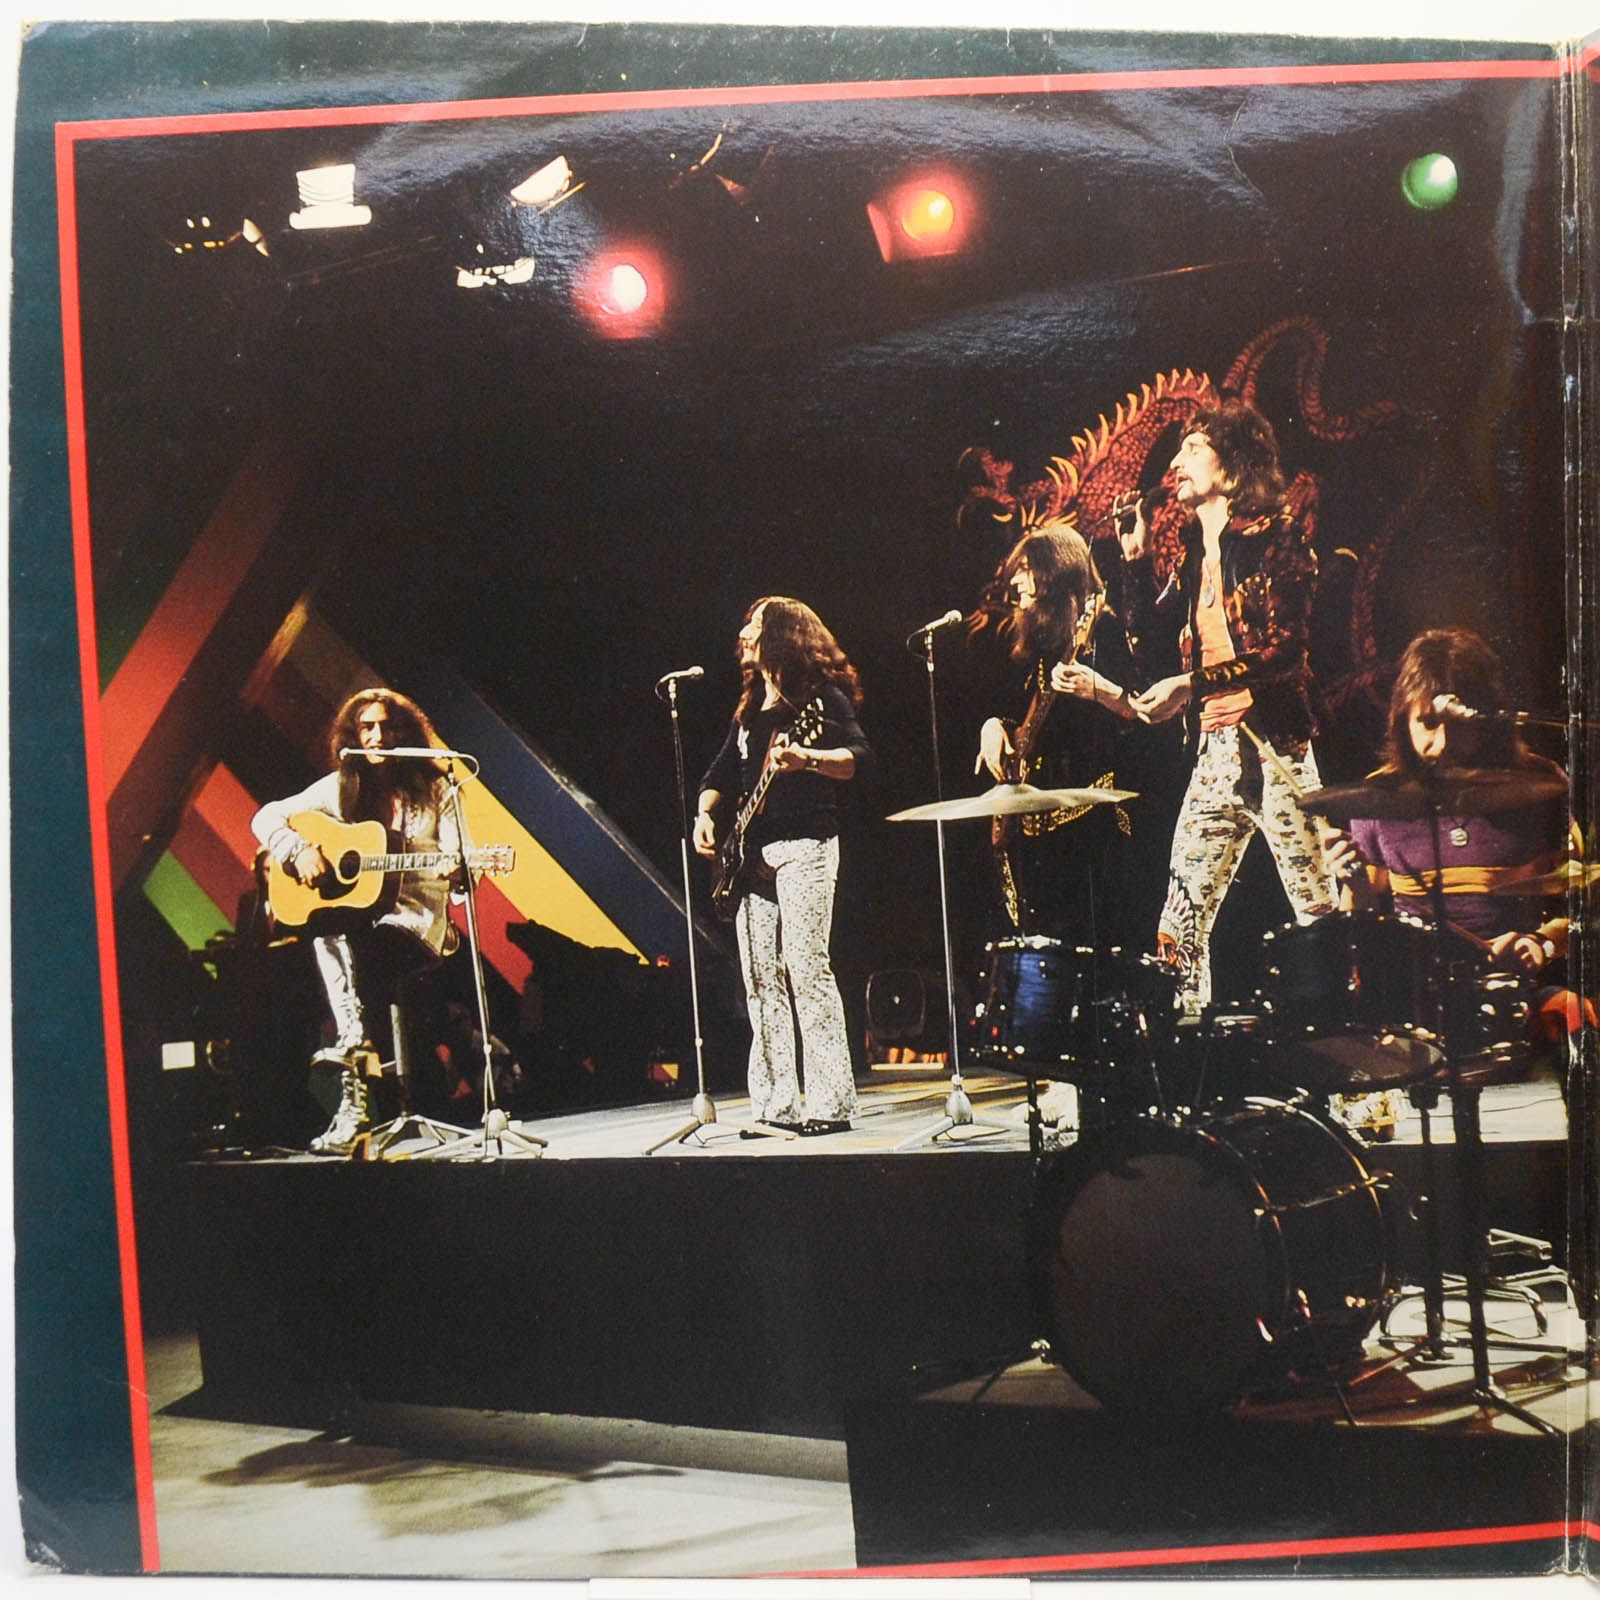 Uriah Heep — Anthology (2LP, UK), 1985